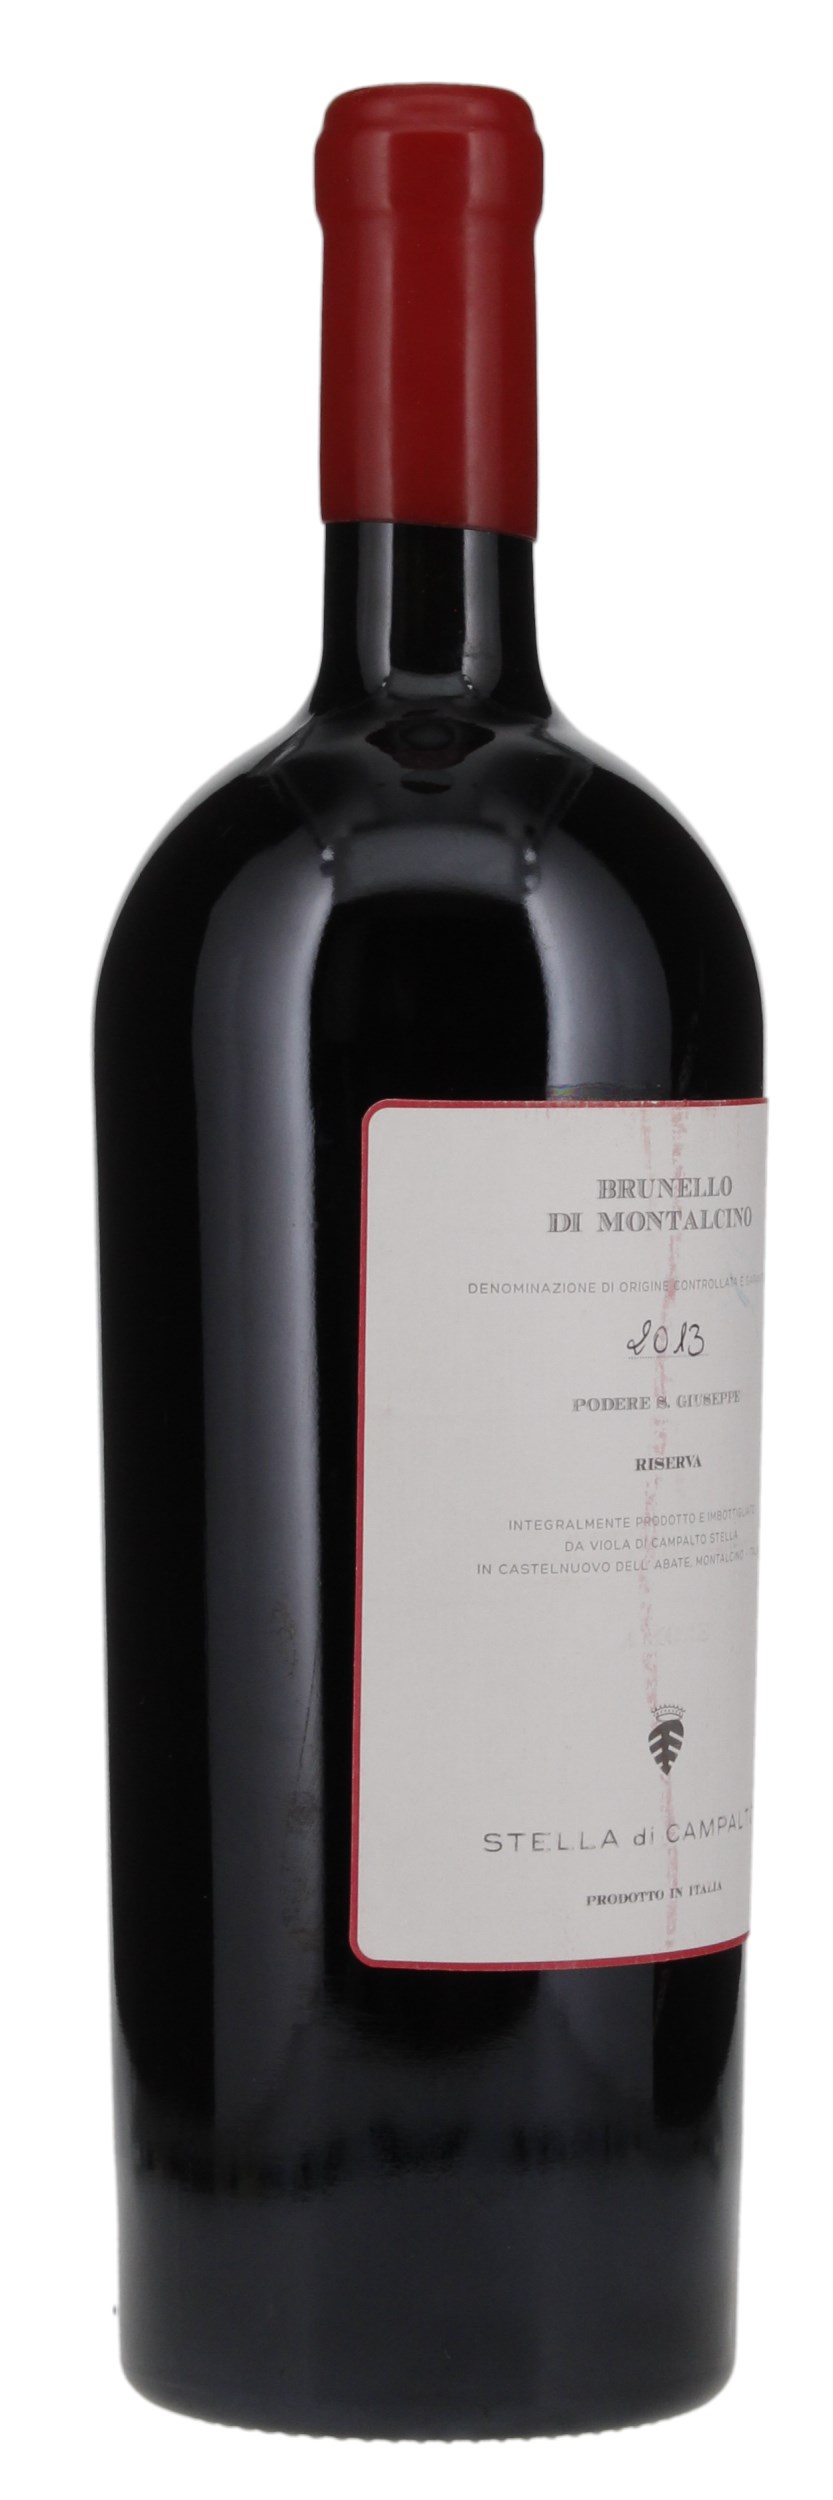 2013 Stella di Campalto Brunello di Montalcino Riserva, 1.5ltr